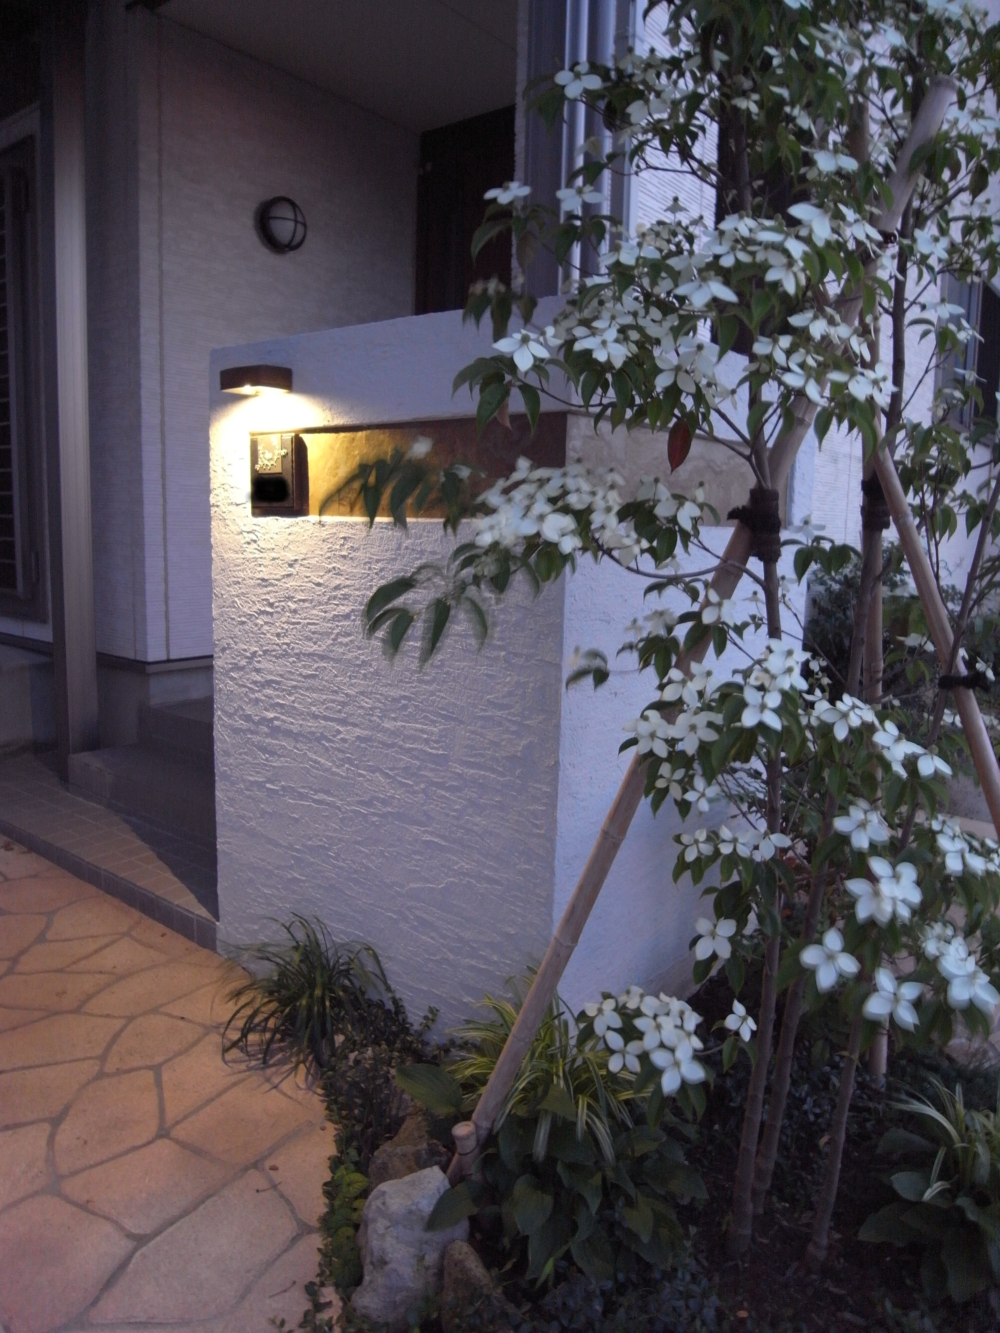 玄関前のライティング ヤマボウシの開花時期(初夏)は涼やかな空間が楽しめます。
